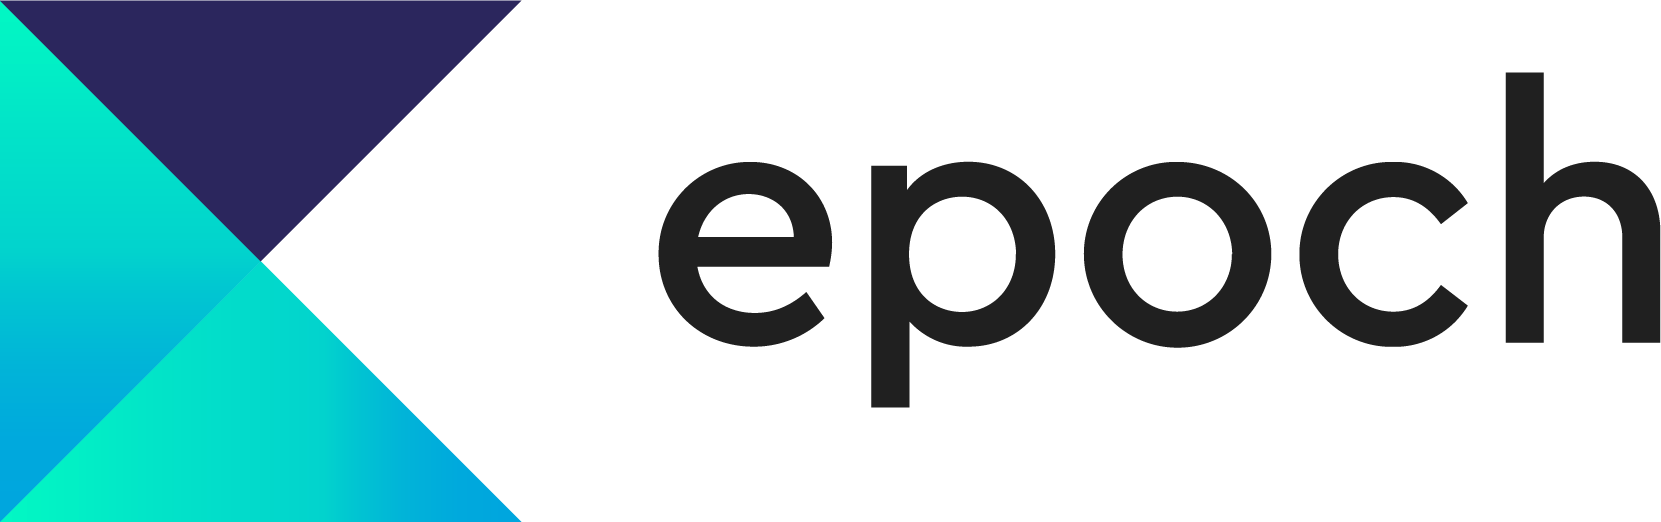 Epoch Logo - Home - EPOCH